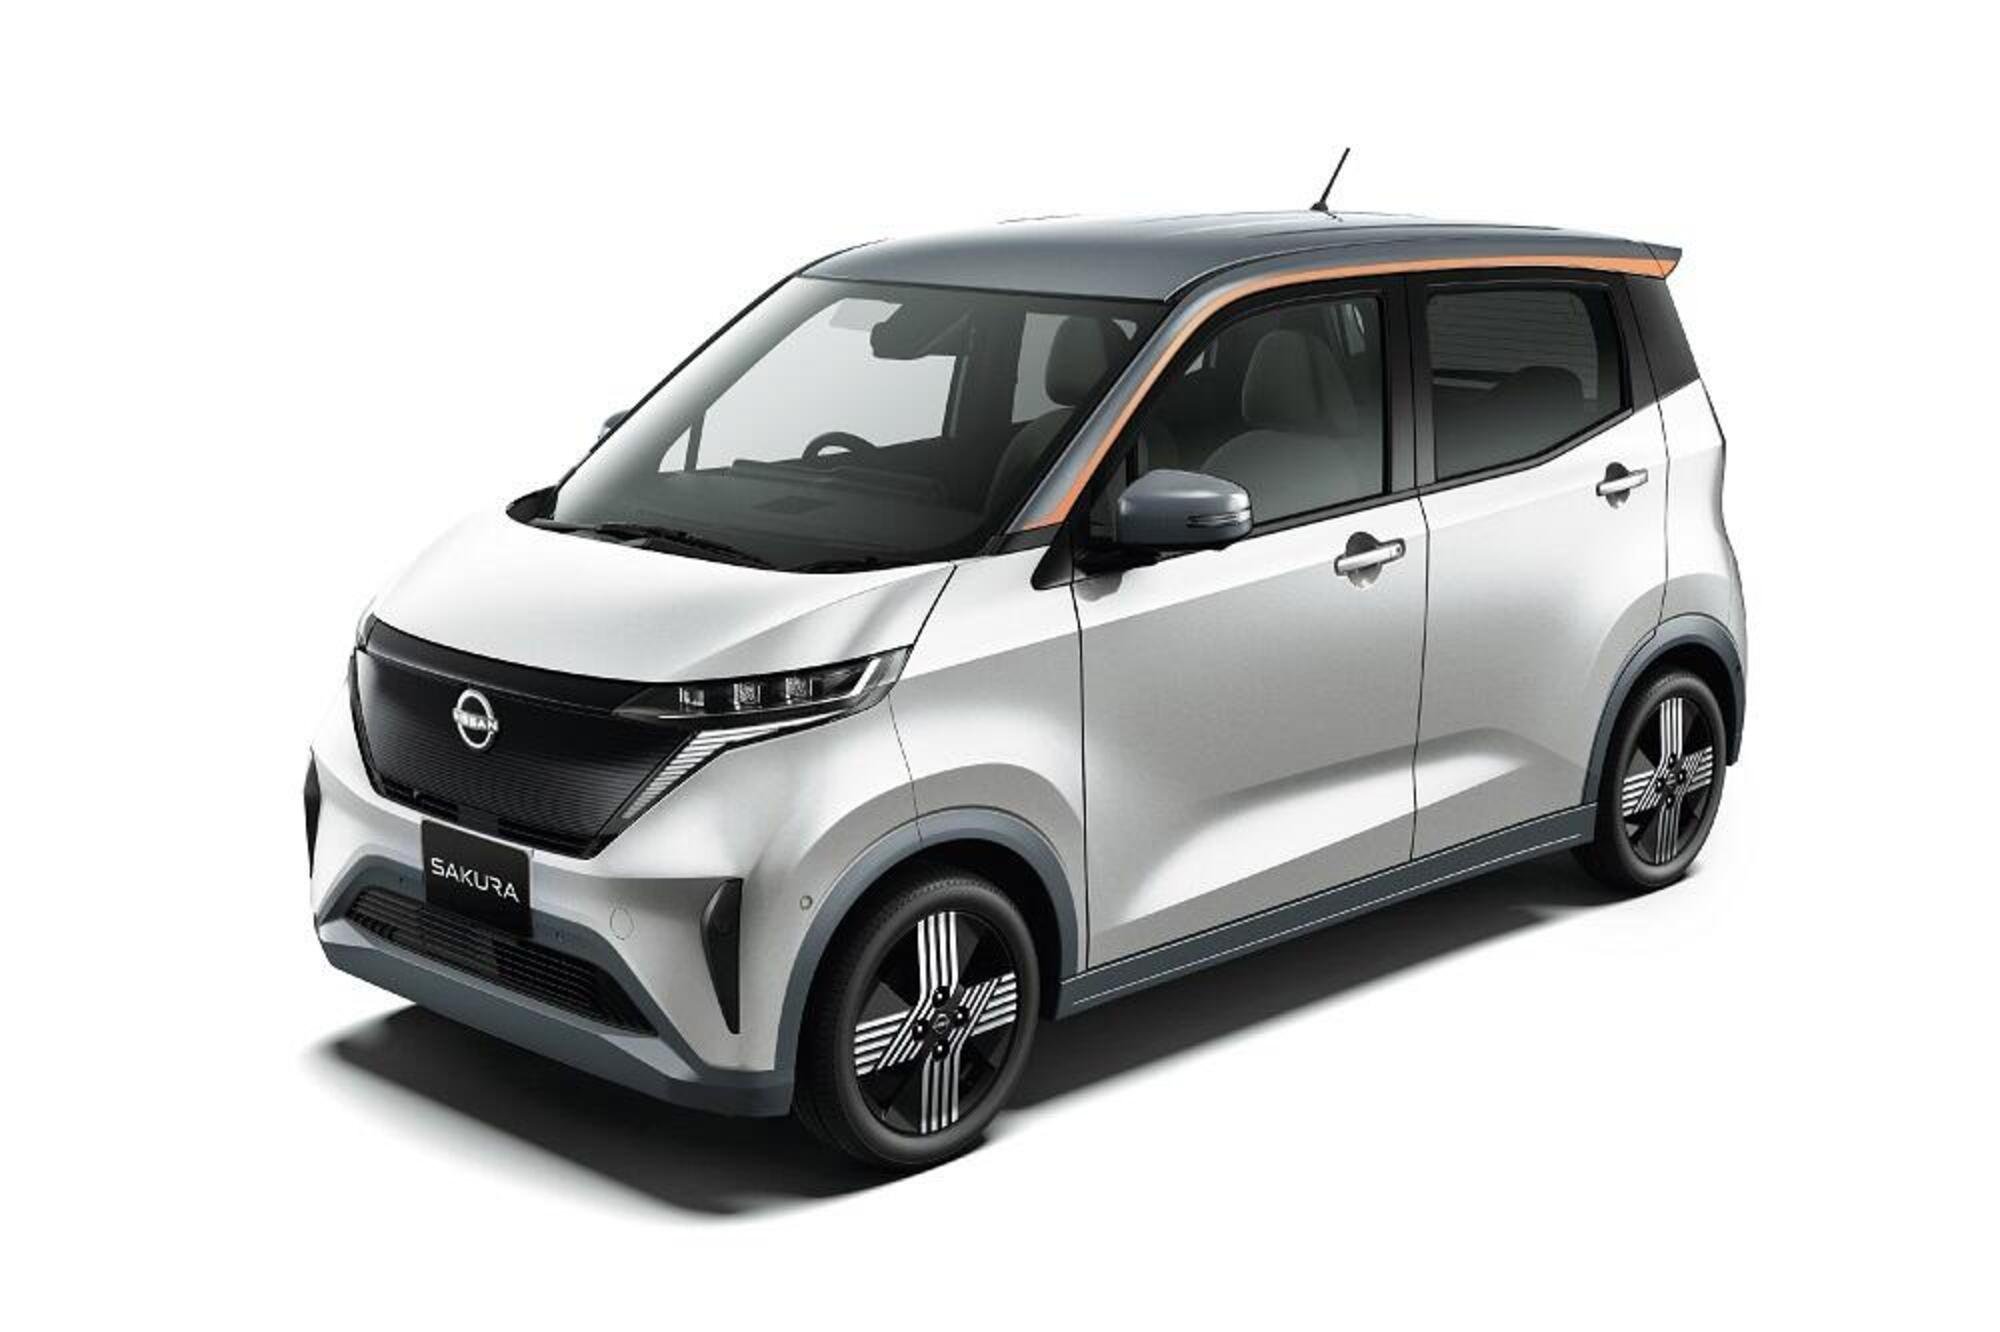 Nuova Nissan Sakura: la citycar elettrica da 21.000 euro [VIDEO]